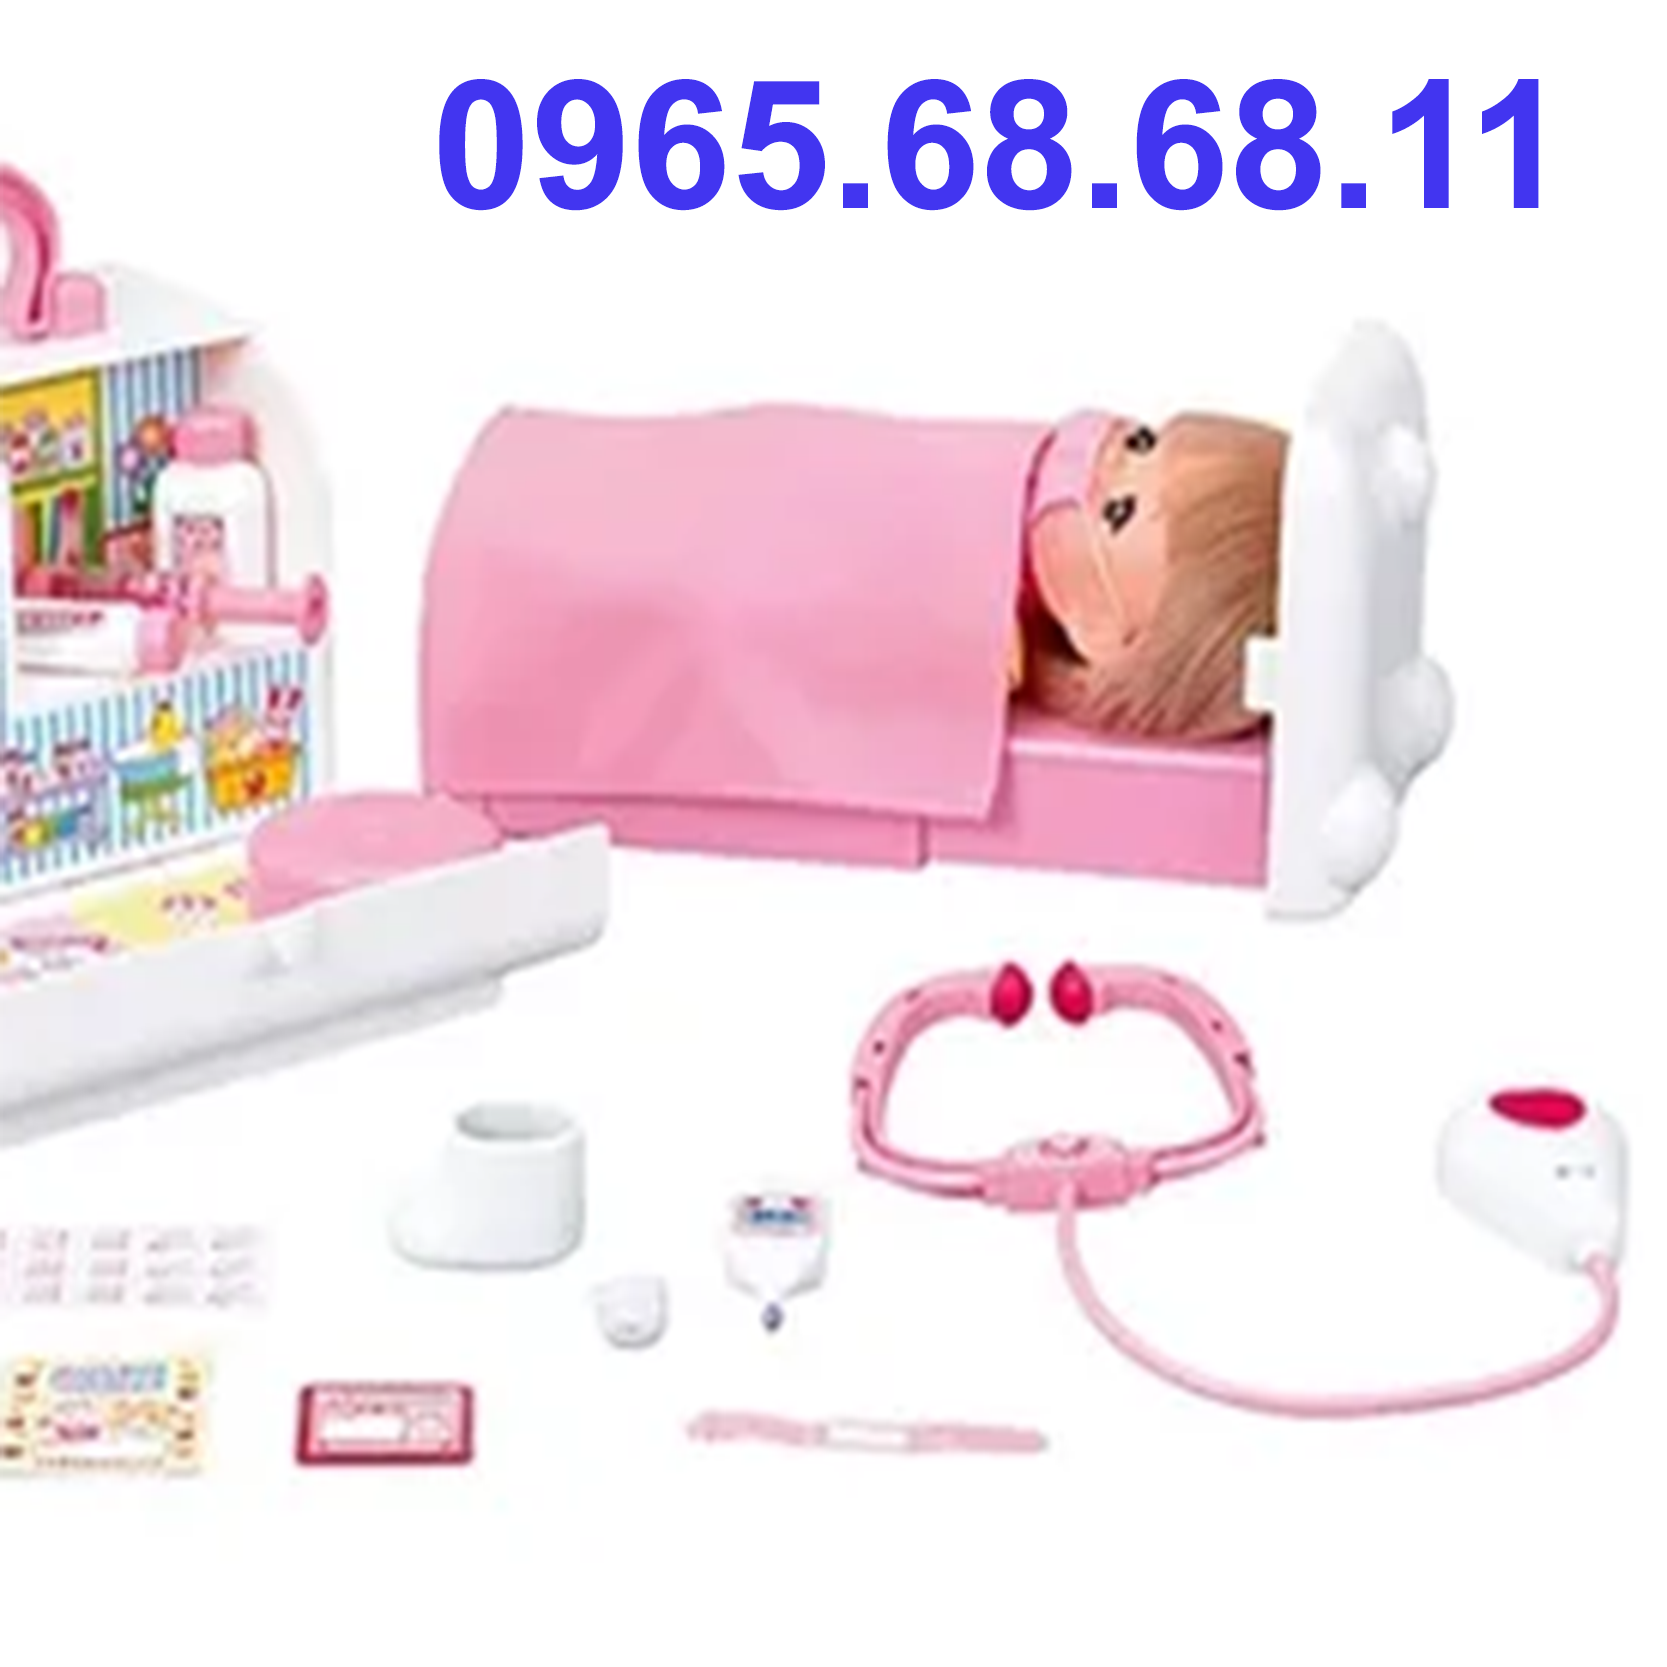 Phụ kiện đạo cụ Nhật Bản Mellchan Milu búp bê bé gái bồn tắm, bộ đồ chơi khám bệnh đồ chơi cho bé